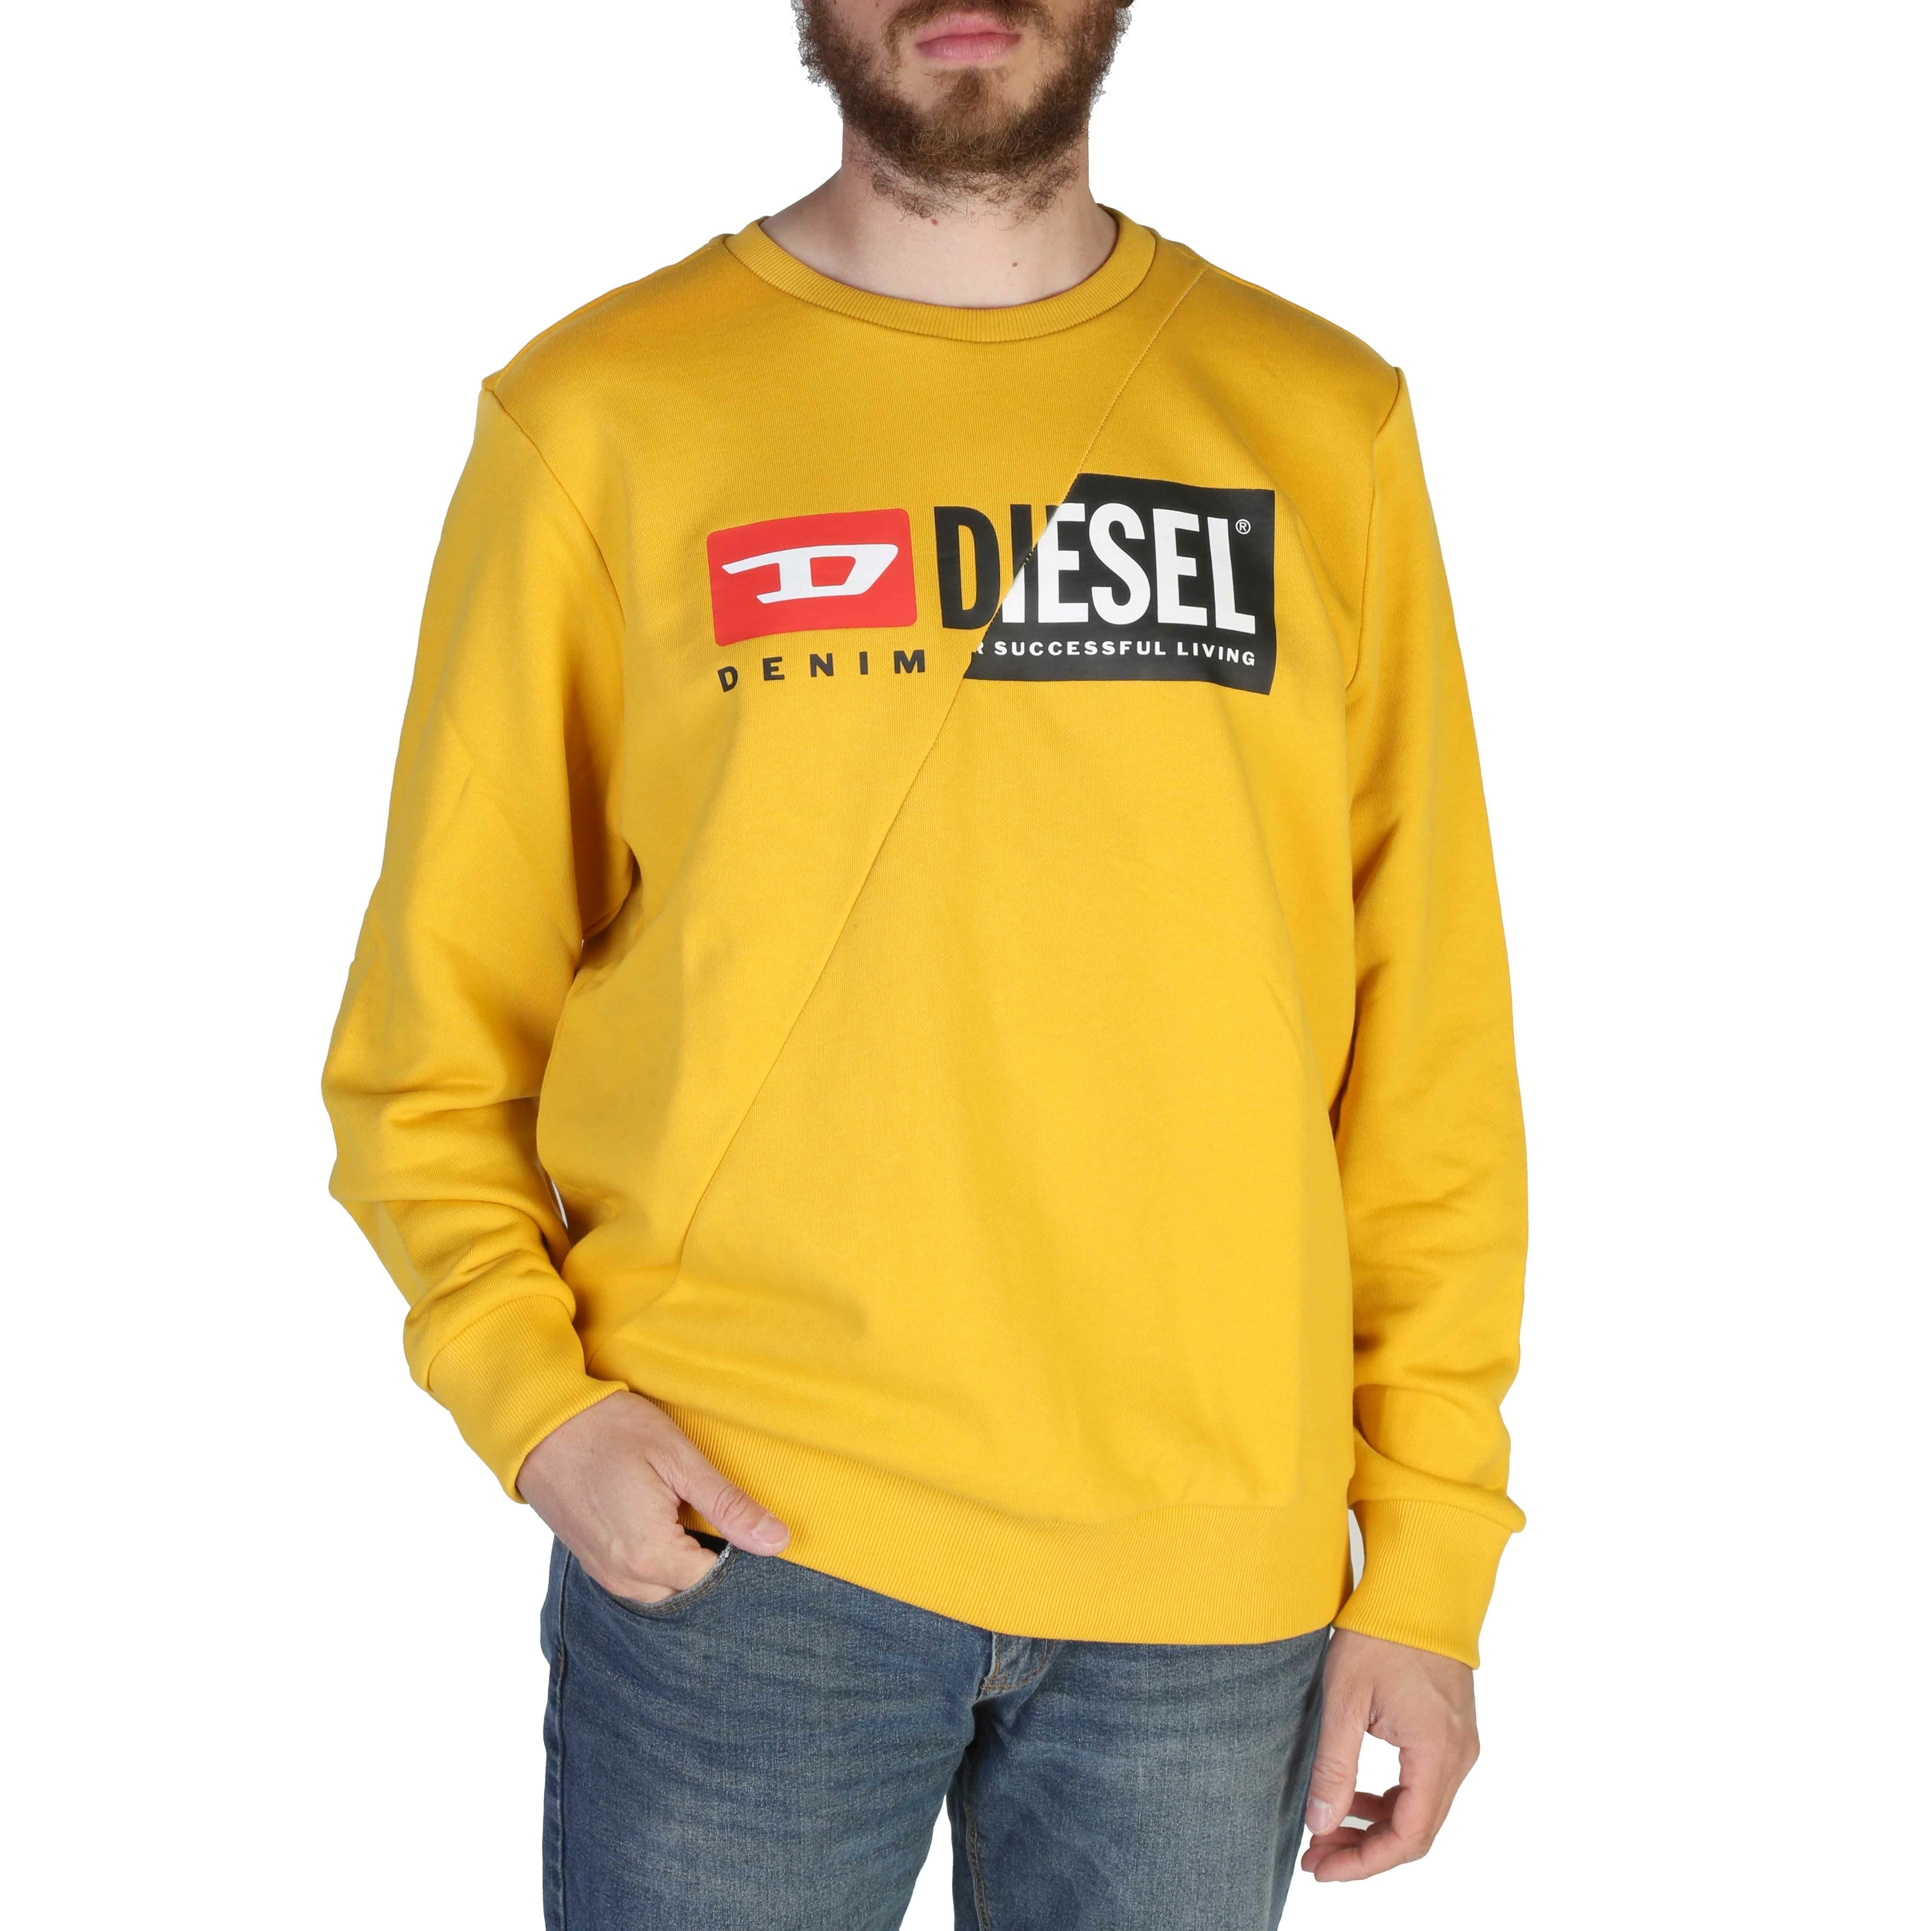 Diesel - Sweat-shirt homme